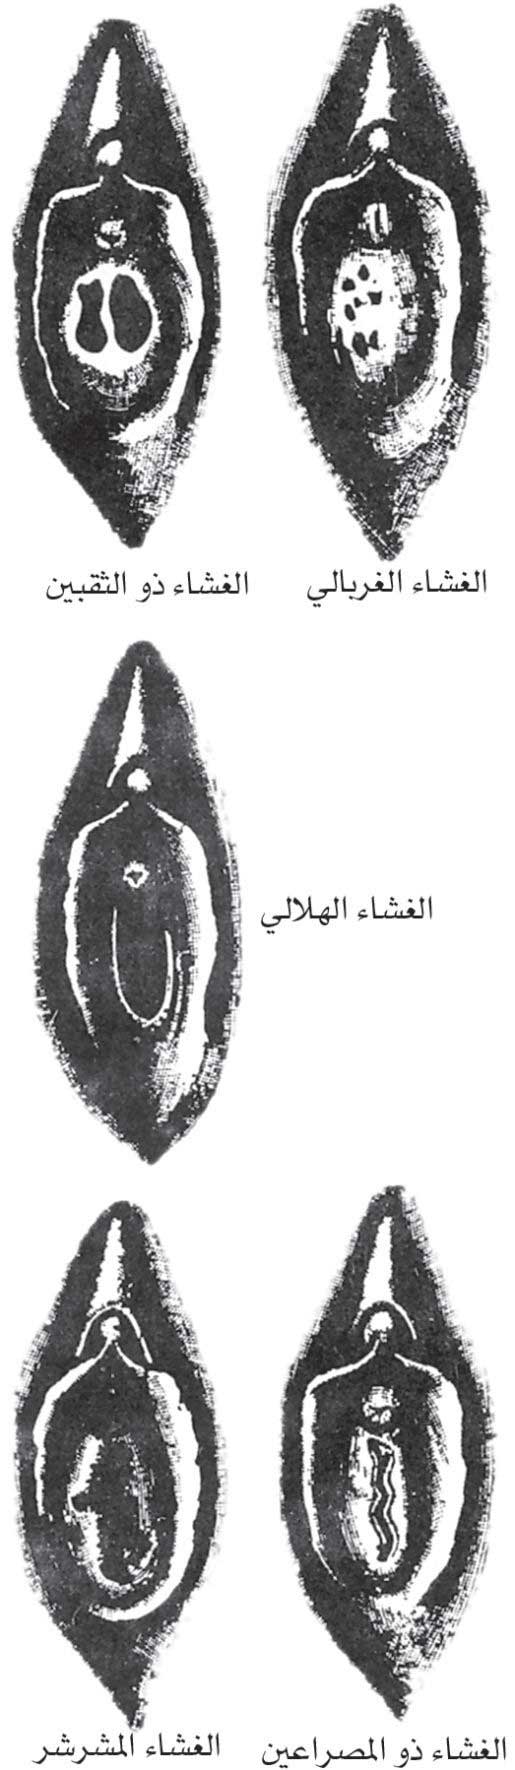 الموسوعة العربية | عدم انثقاب غشاء البكارة